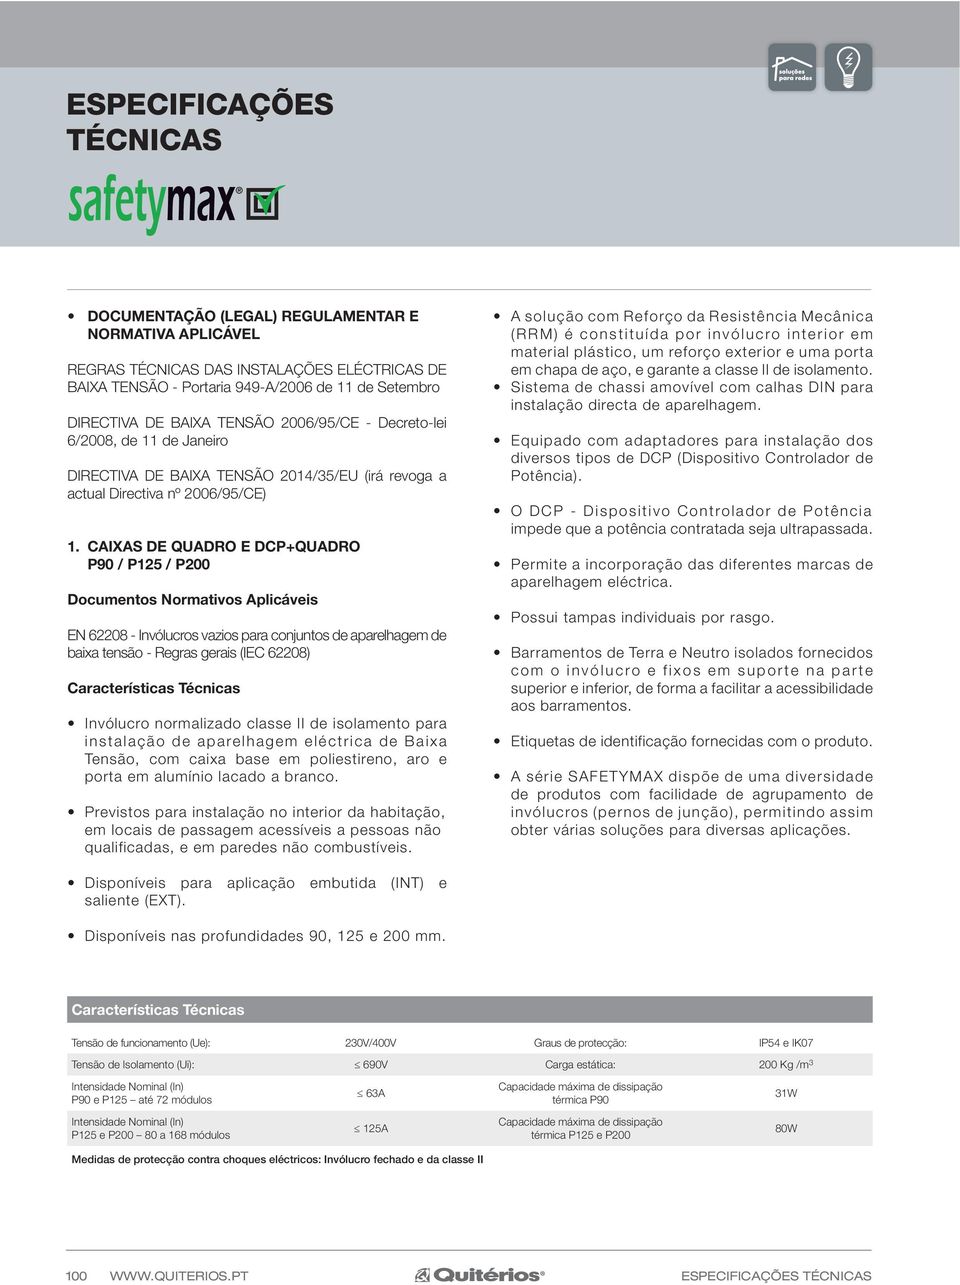 CAIXAS DE QUADRO E DCP+QUADRO P90 / P125 / P200 Documentos Normativos Aplicáveis EN 62208 - Invólucros vazios para conjuntos de aparelhagem de baixa tensão - Regras gerais (IEC 62208) Invólucro